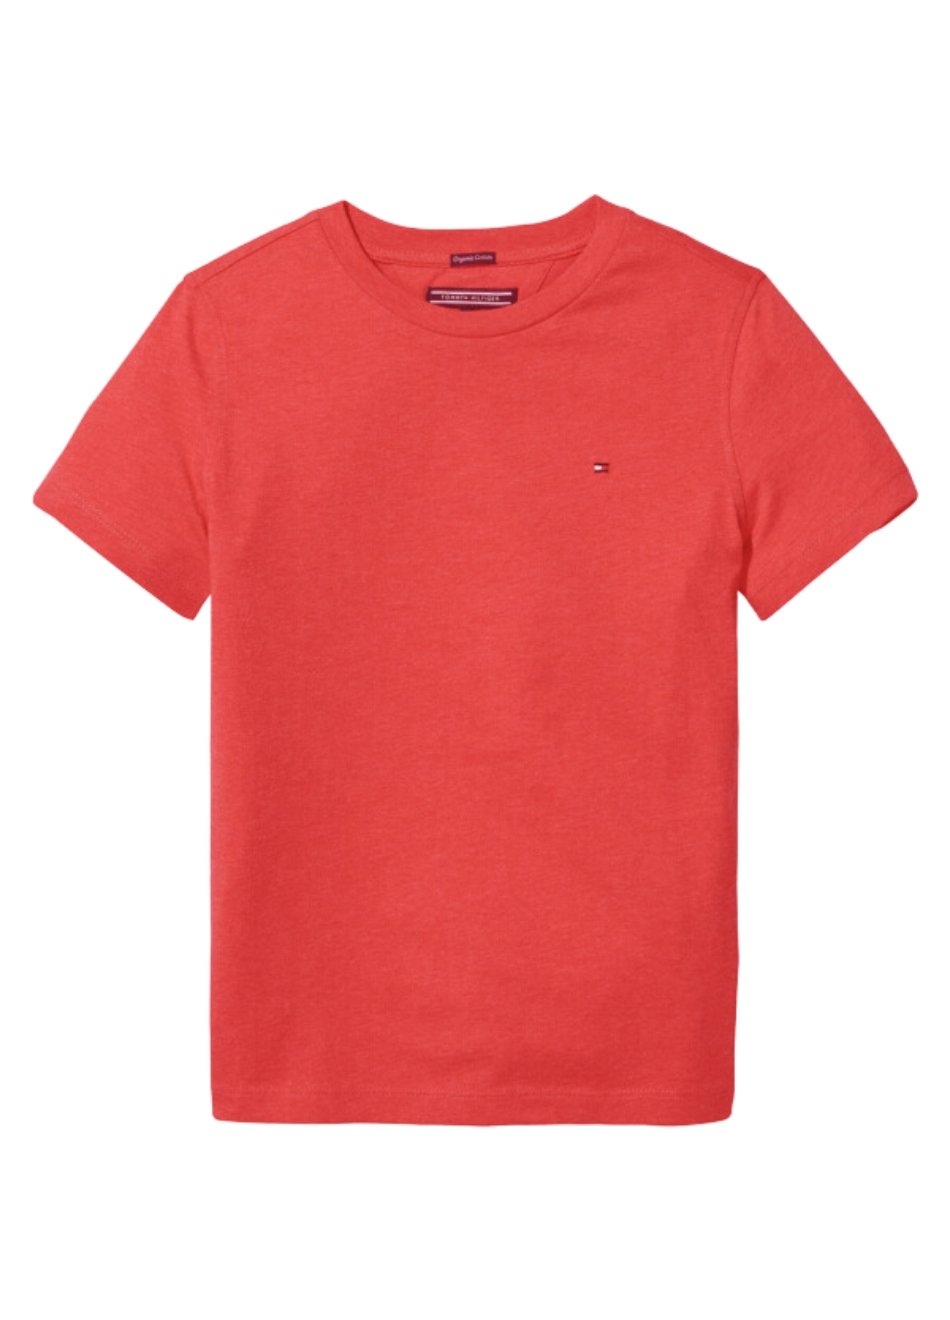 Camiseta Tommy Hilfiger Infantil Algodão Orgânico  Apple Red Heather